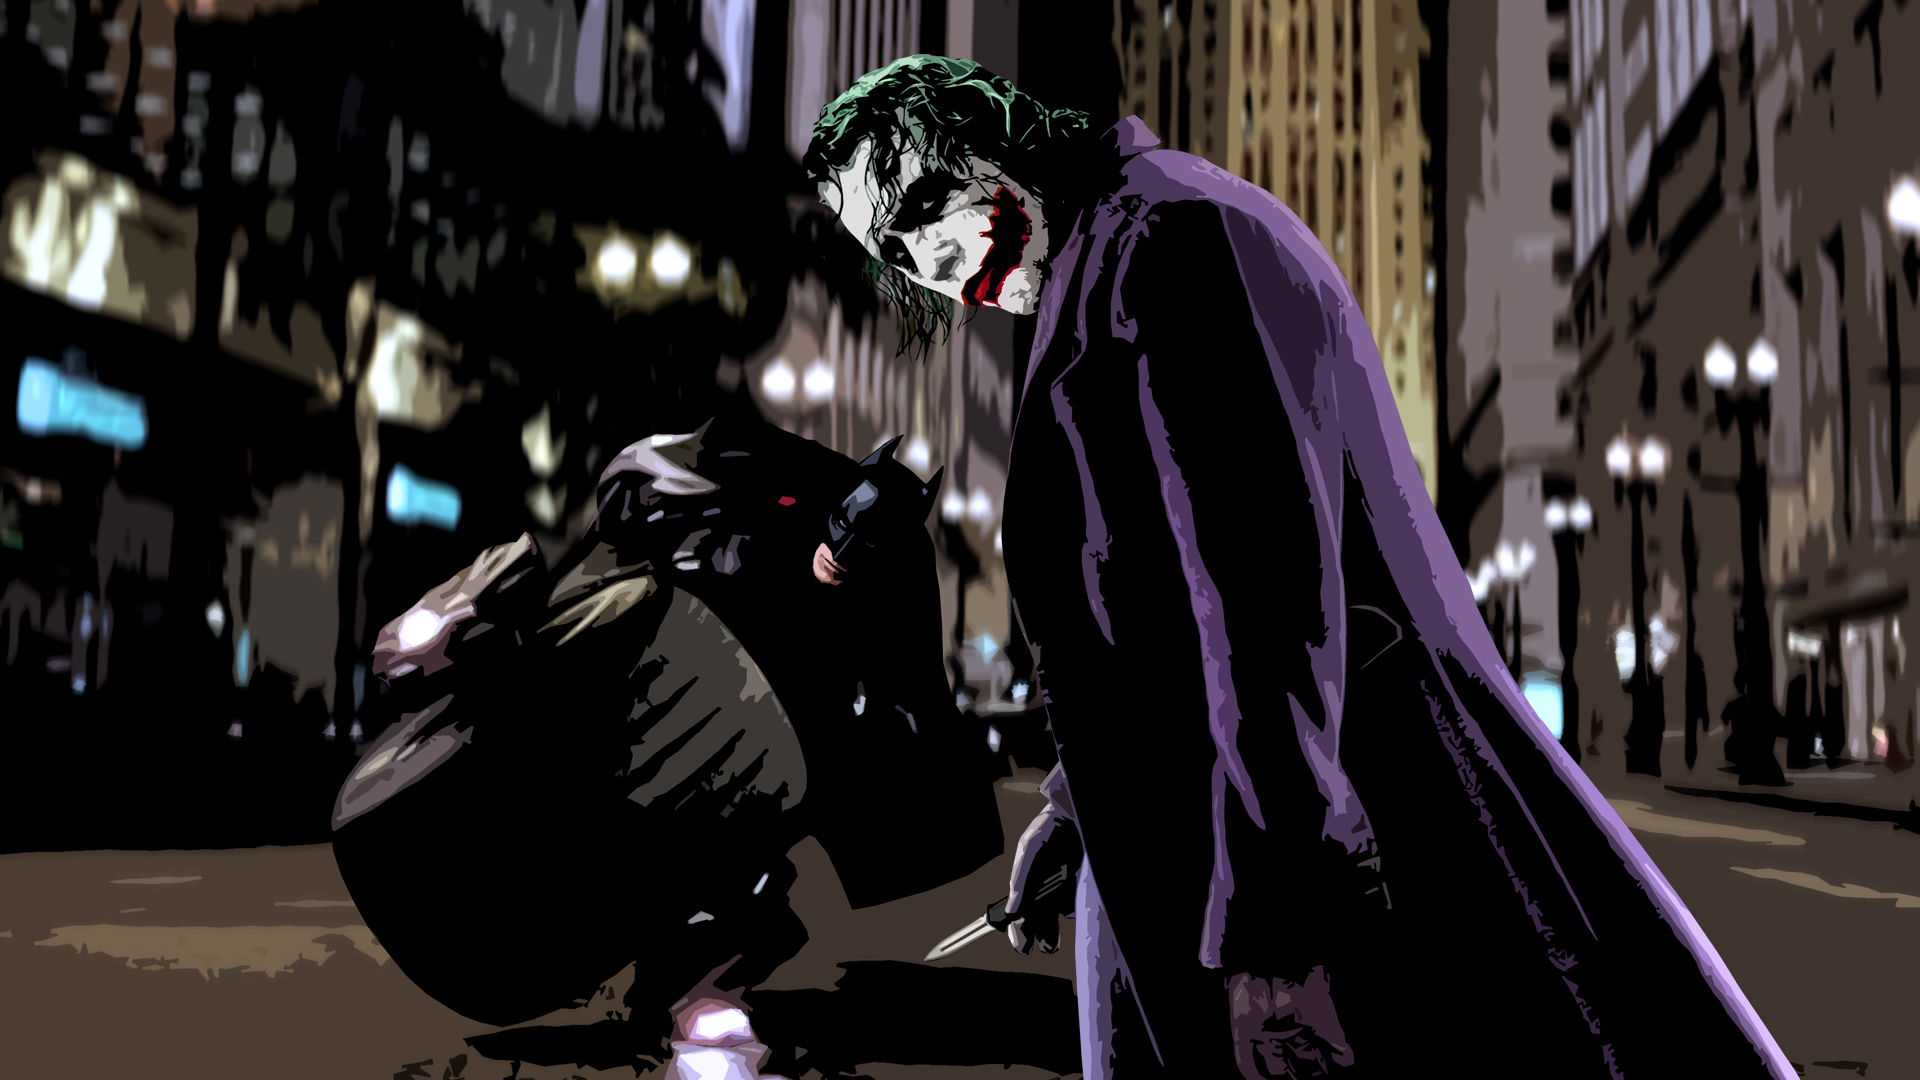 Joker and Batman in intense face-off.